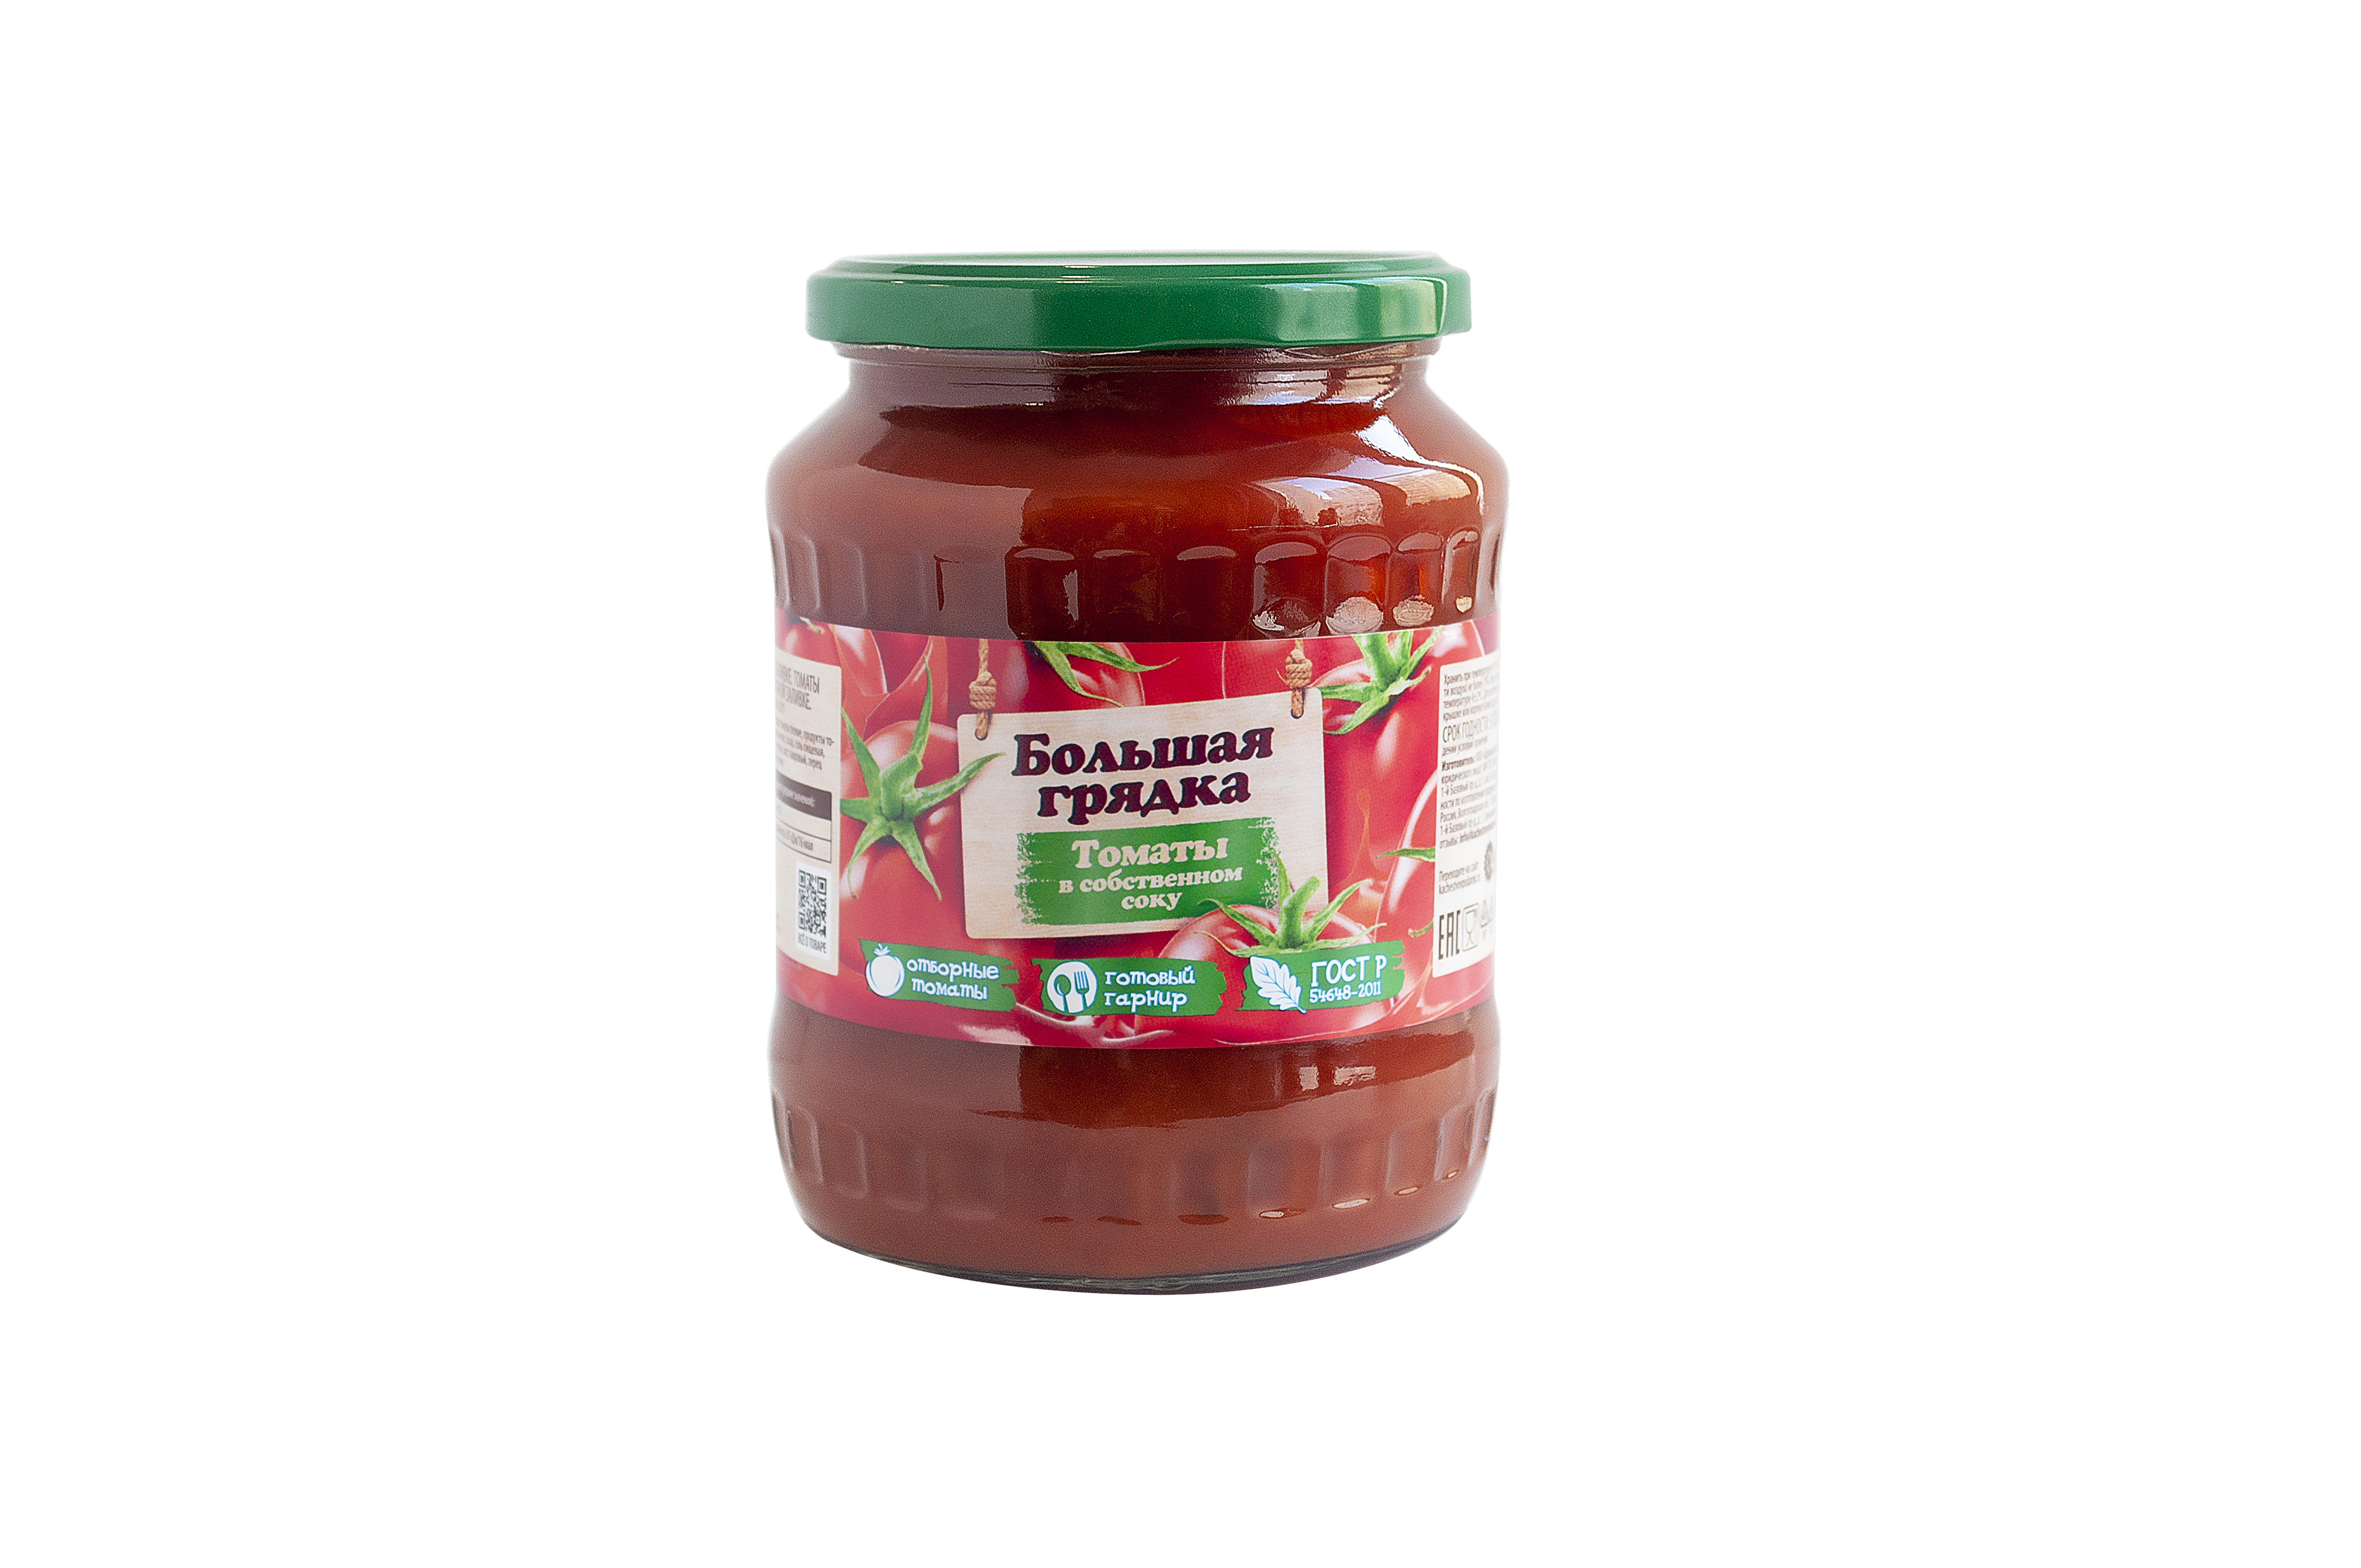 Помидоры в автоклаве: рецепты томатов в собственном соку и в маринаде в домашних условиях